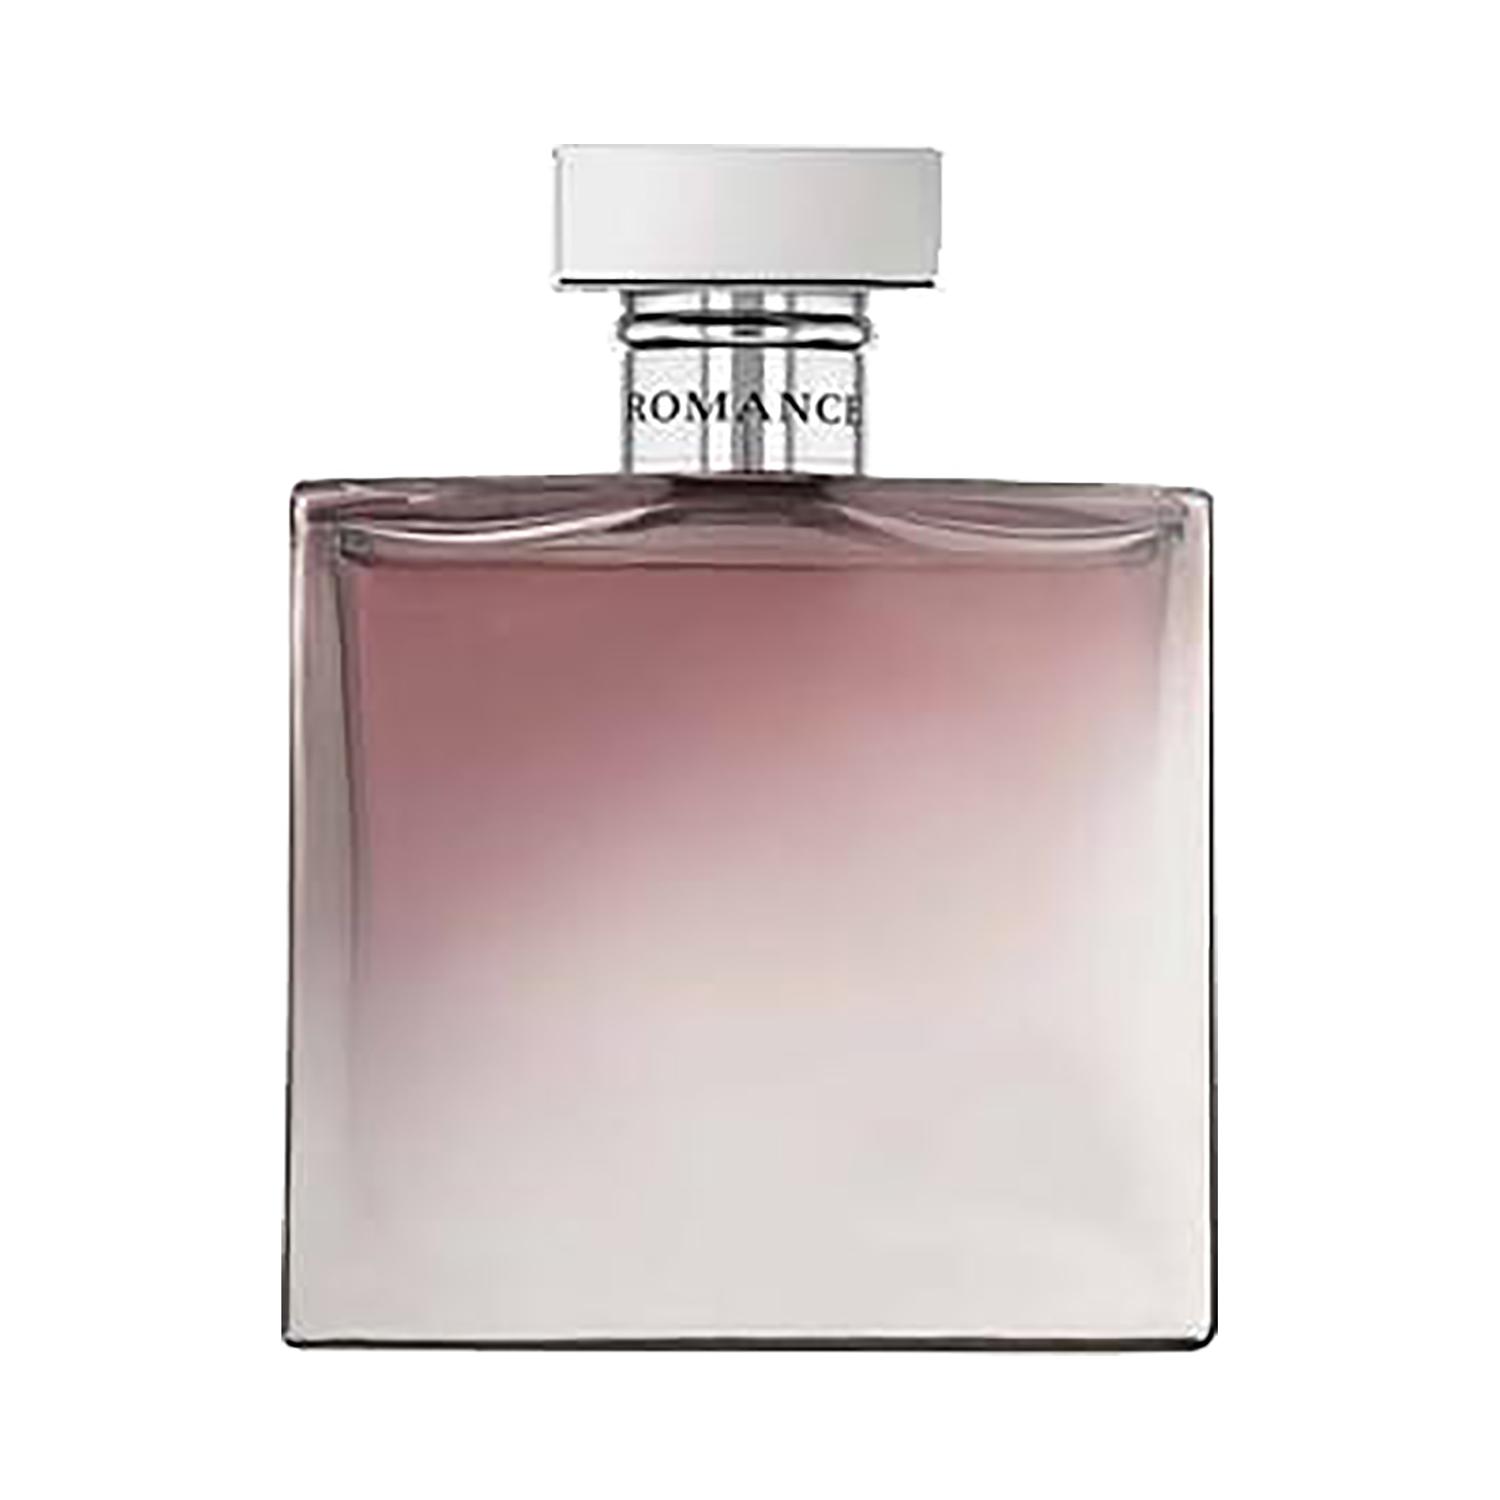 Ralph Lauren Romance Parfum (100ml)